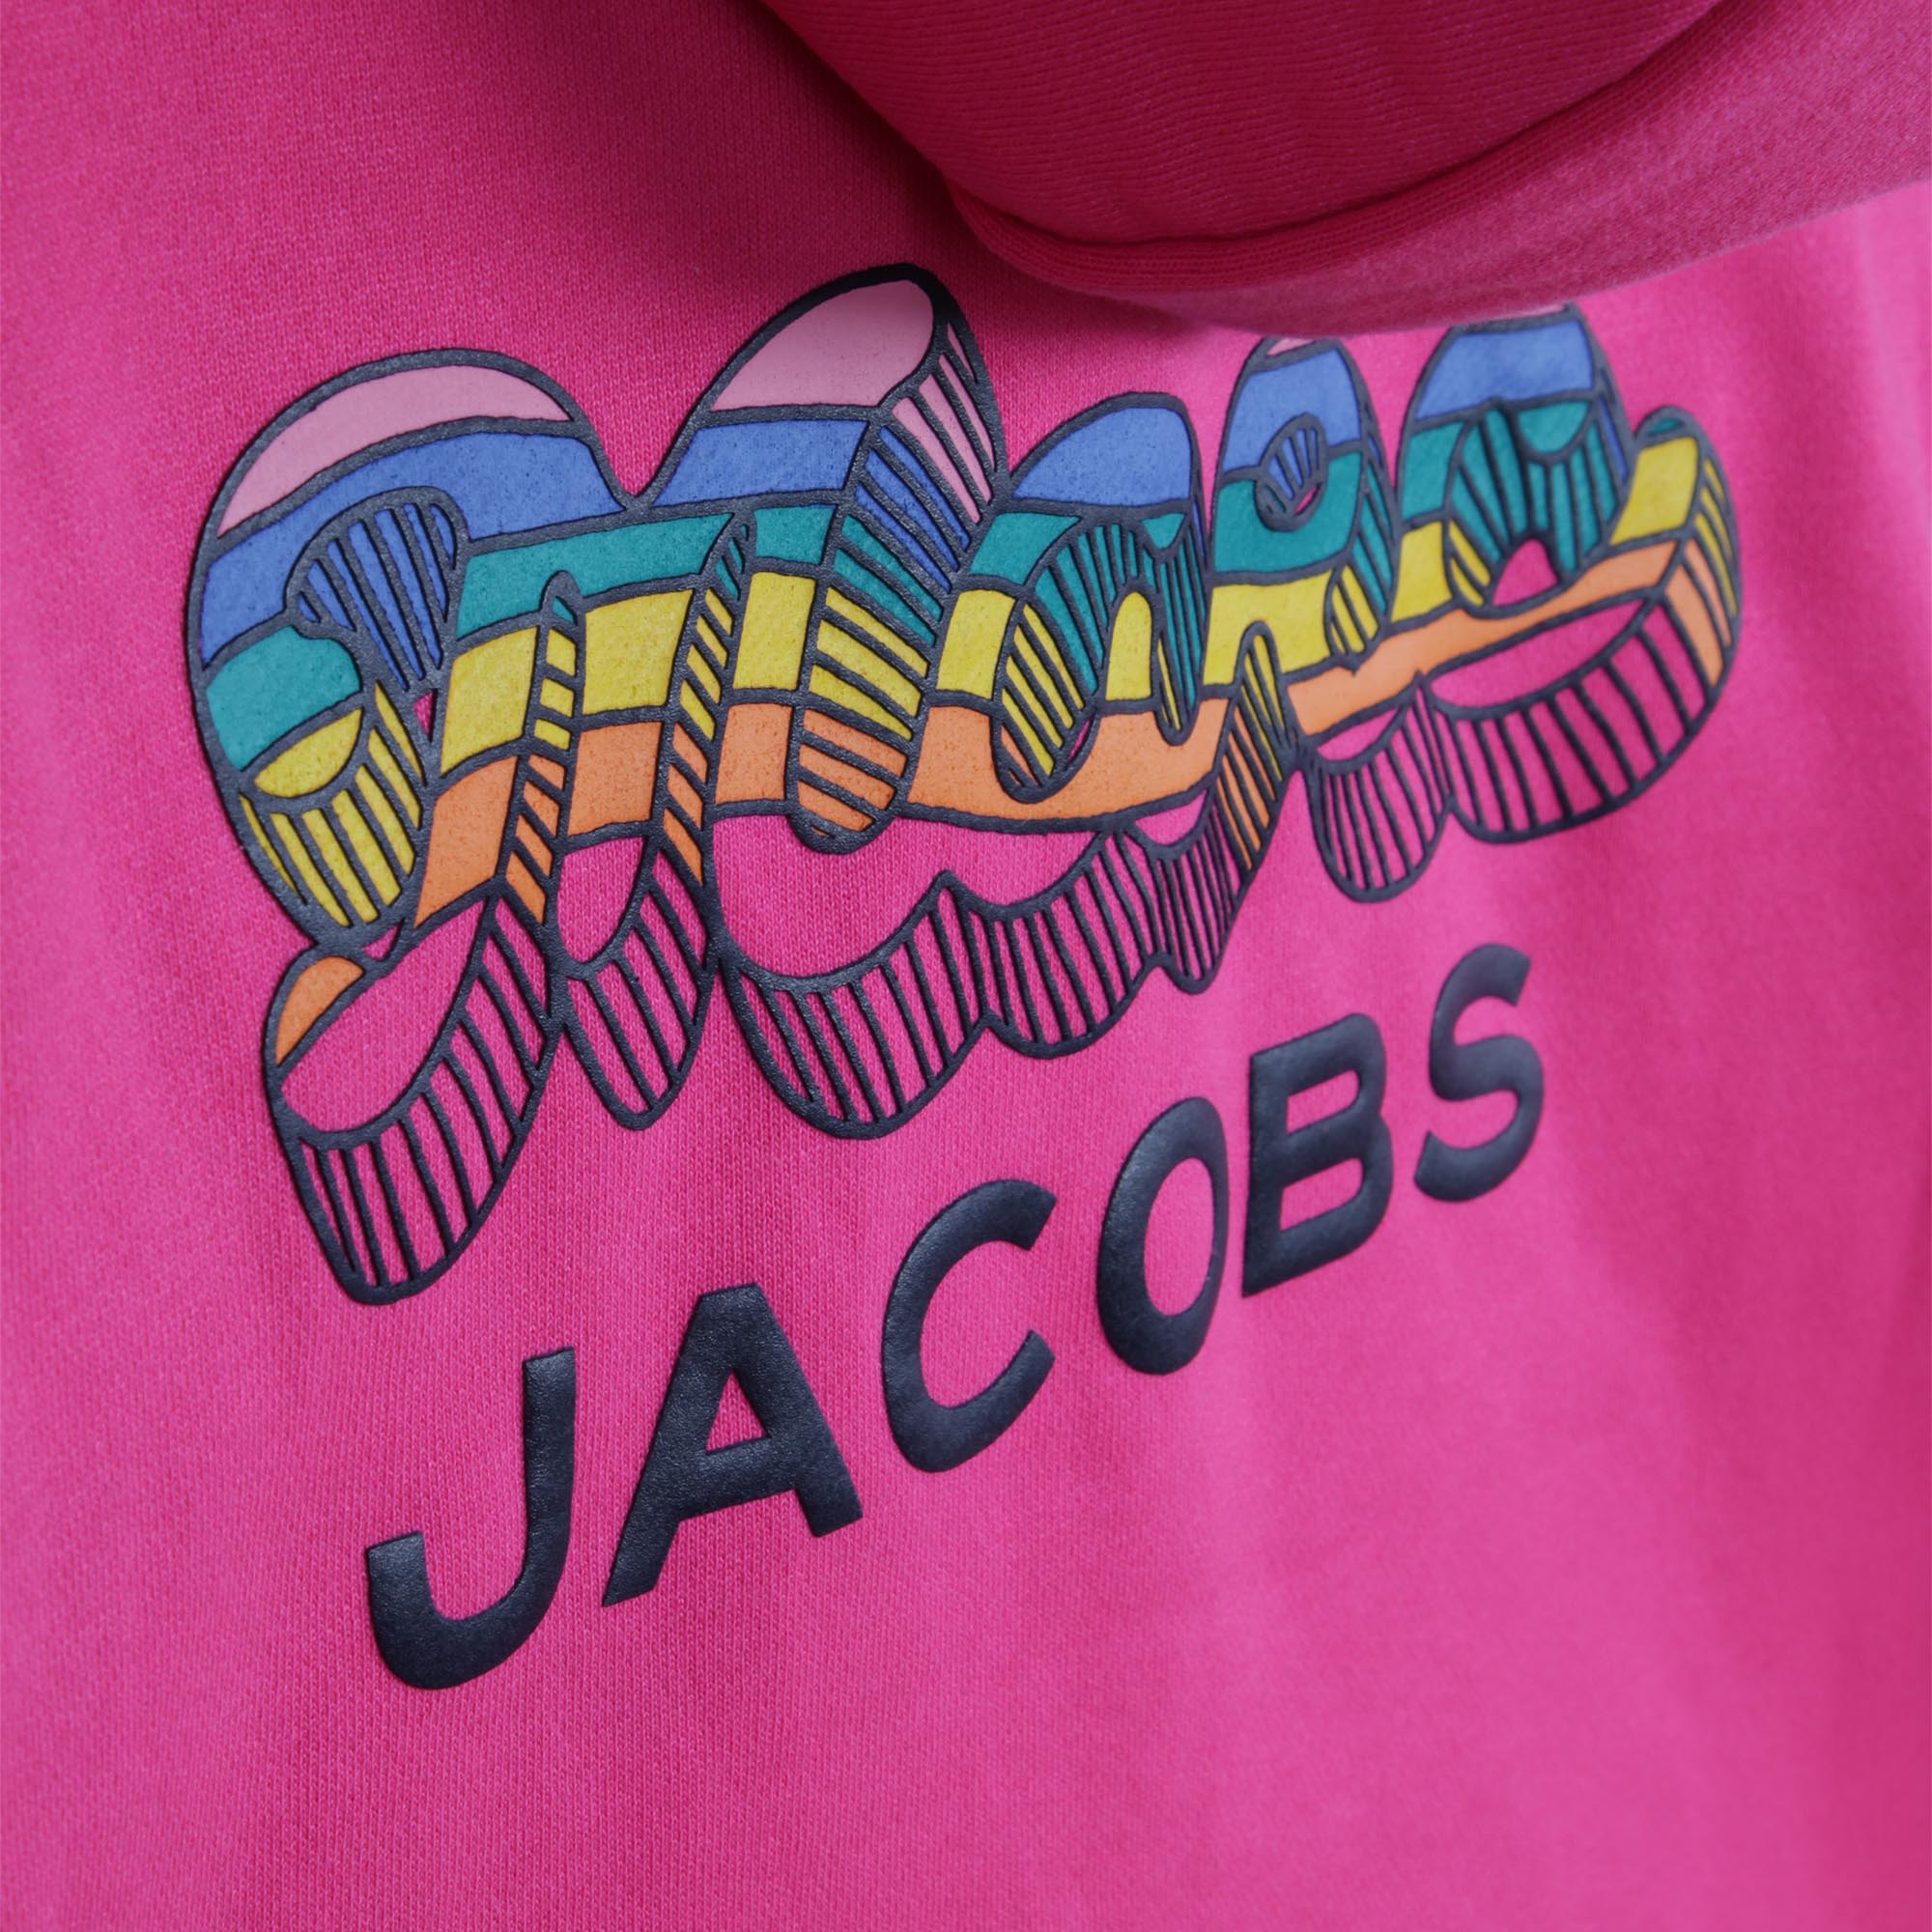 Hooded fleece sweatshirt MARC JACOBS for GIRL